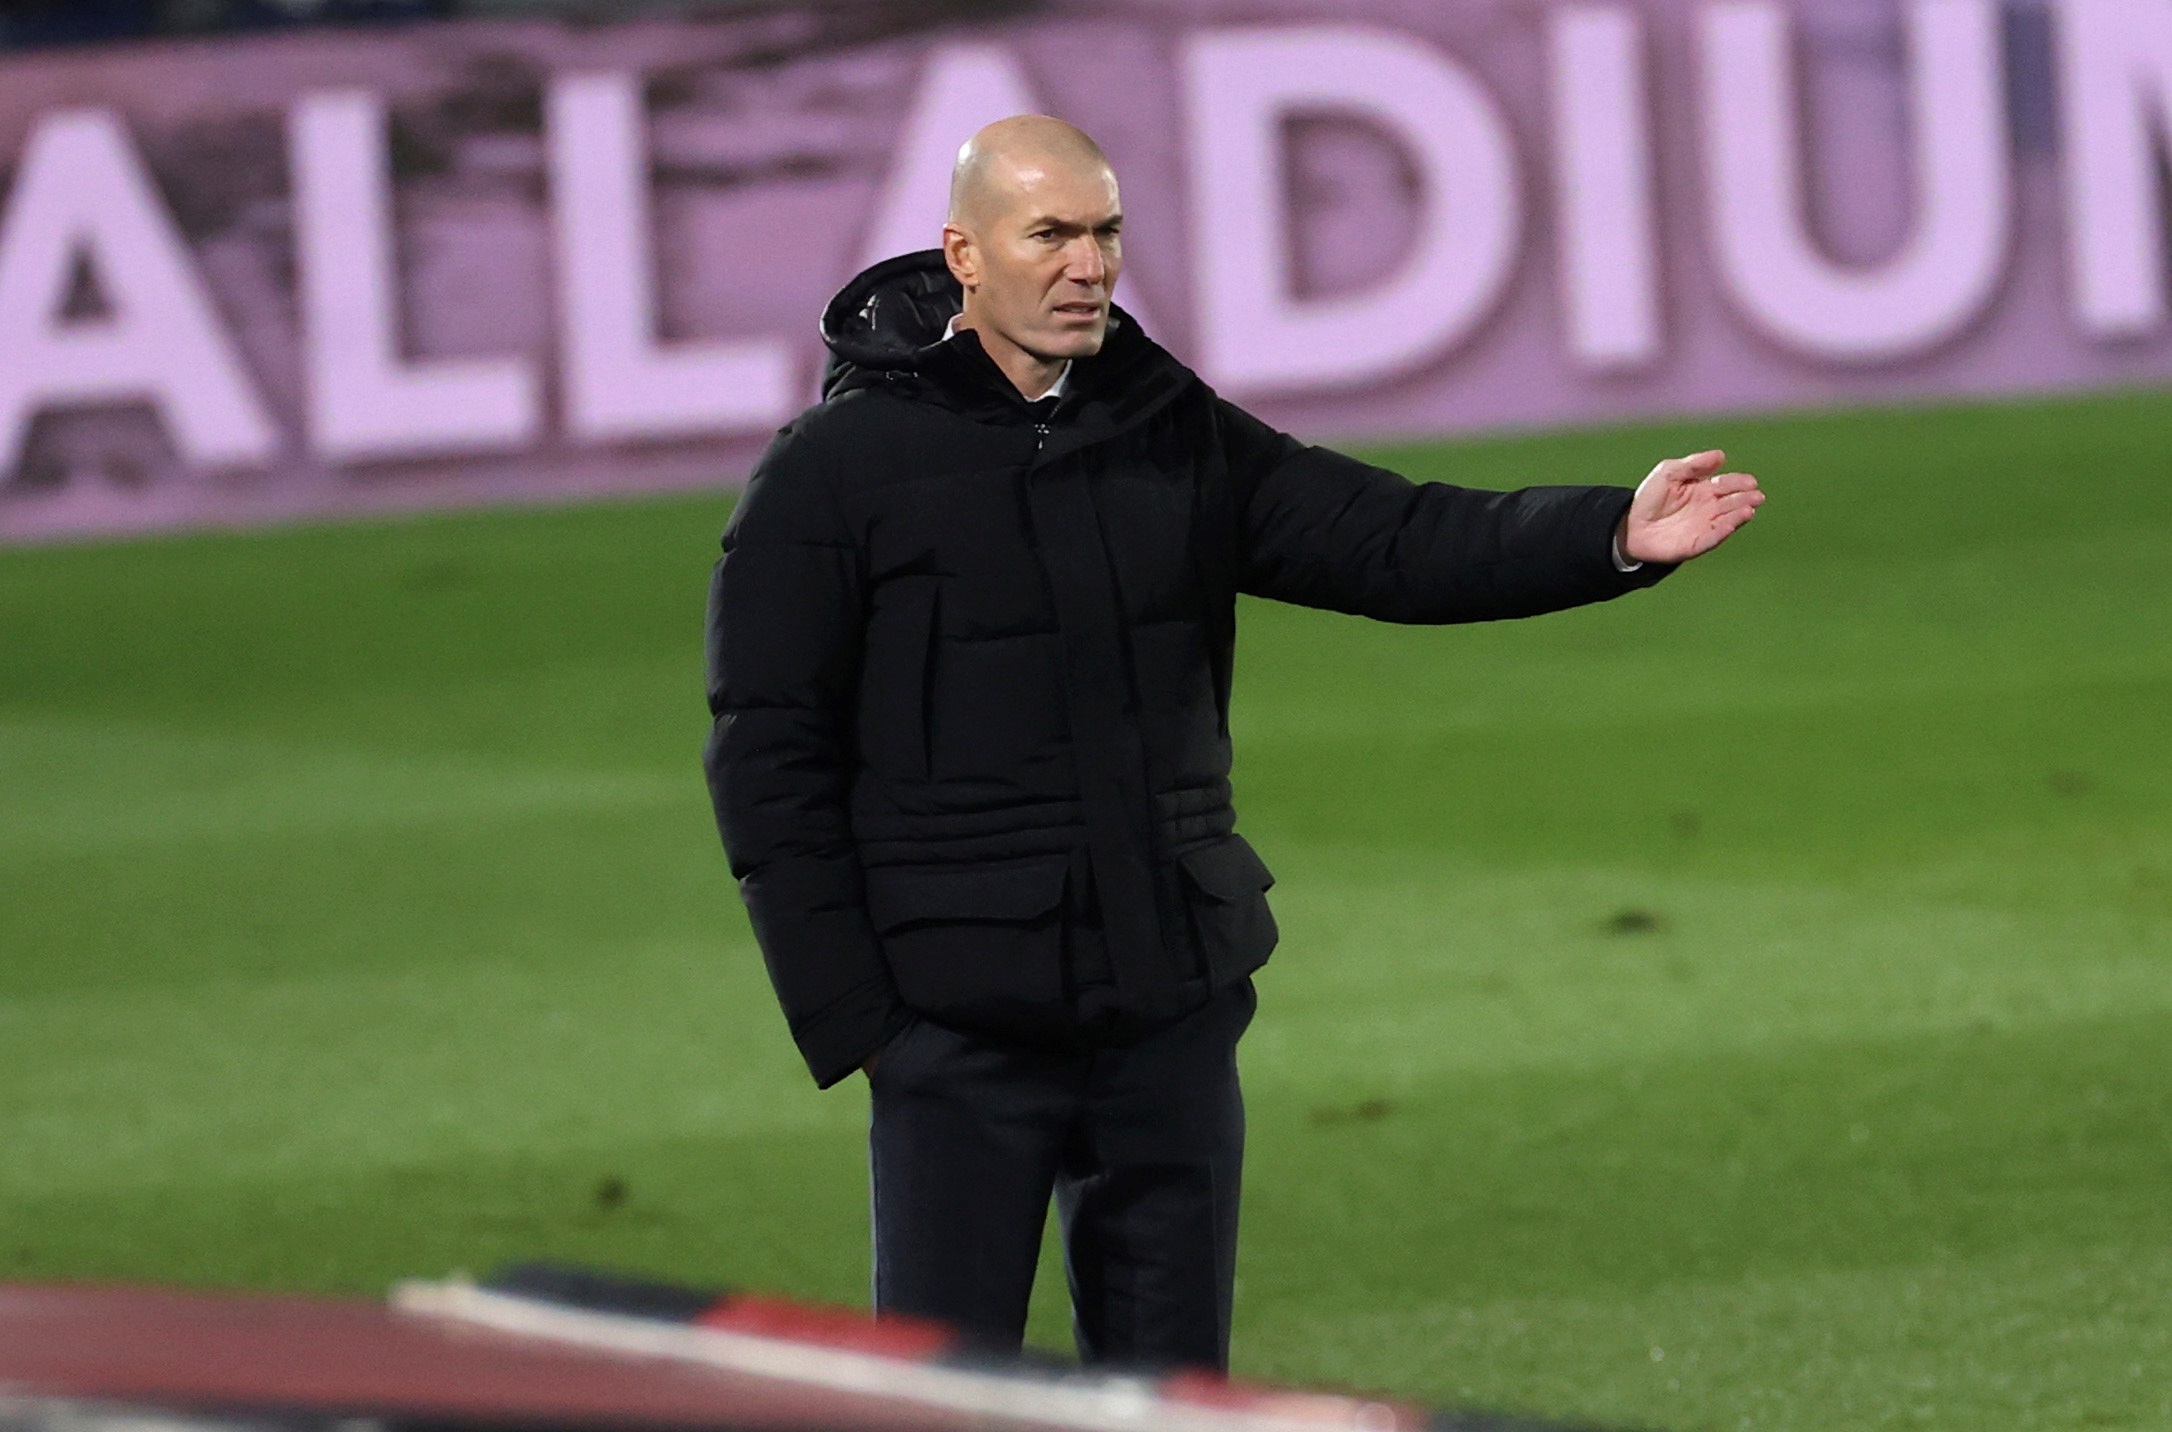 El Real Madrid de Zidane ha ganado solamente dos de sus últimos siete partidos. (Foto: EFE)